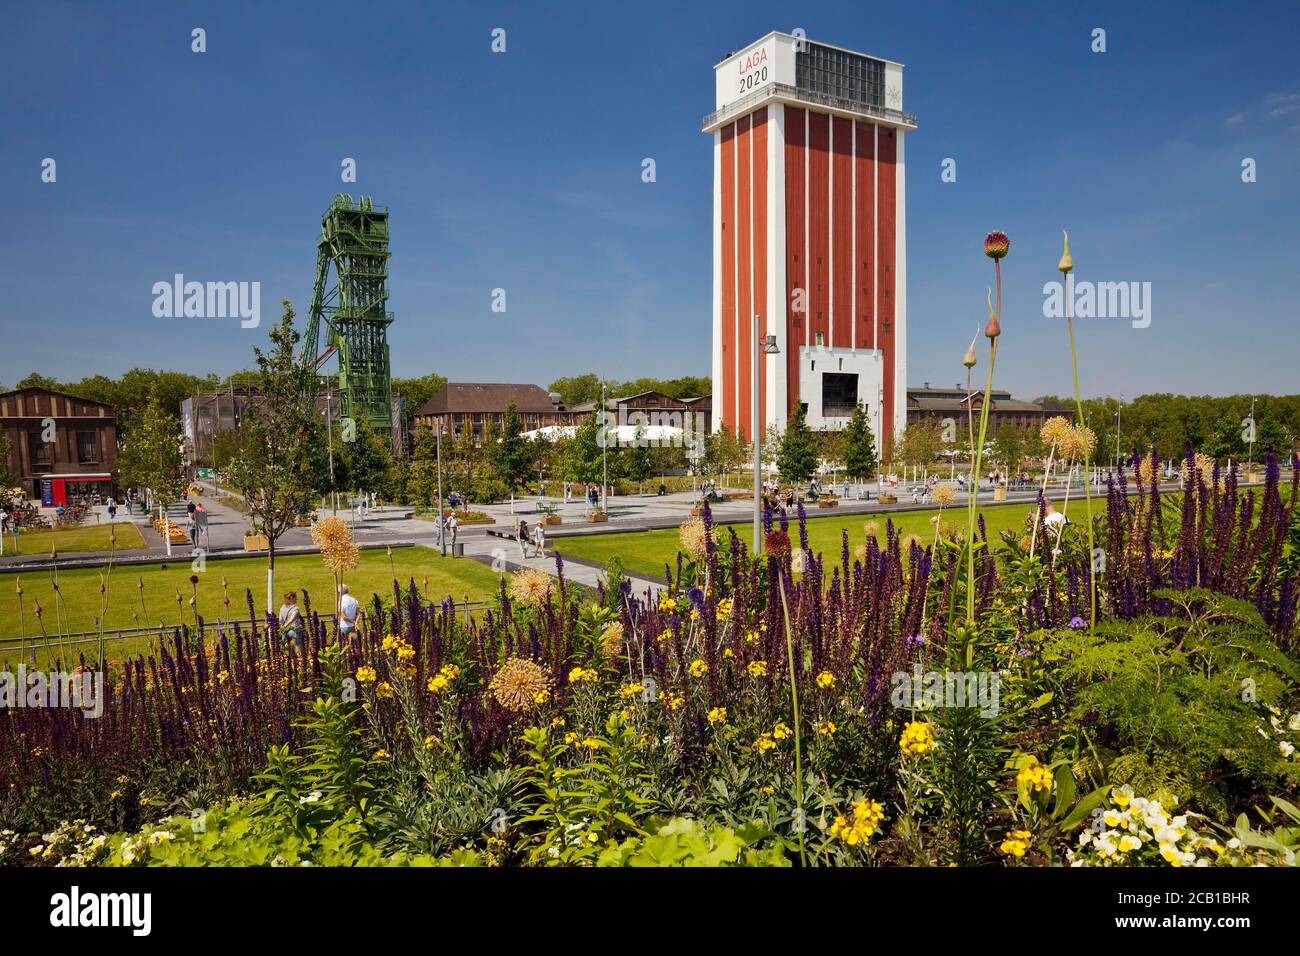 Landesgartenschau 2020 auf dem Gelände der ehemaligen Zeche Friedrich Heinrich 1/2, Kamp-Lintfort, Ruhrgebiet, Nordrhein-Westfalen, Deutschland Stockfoto